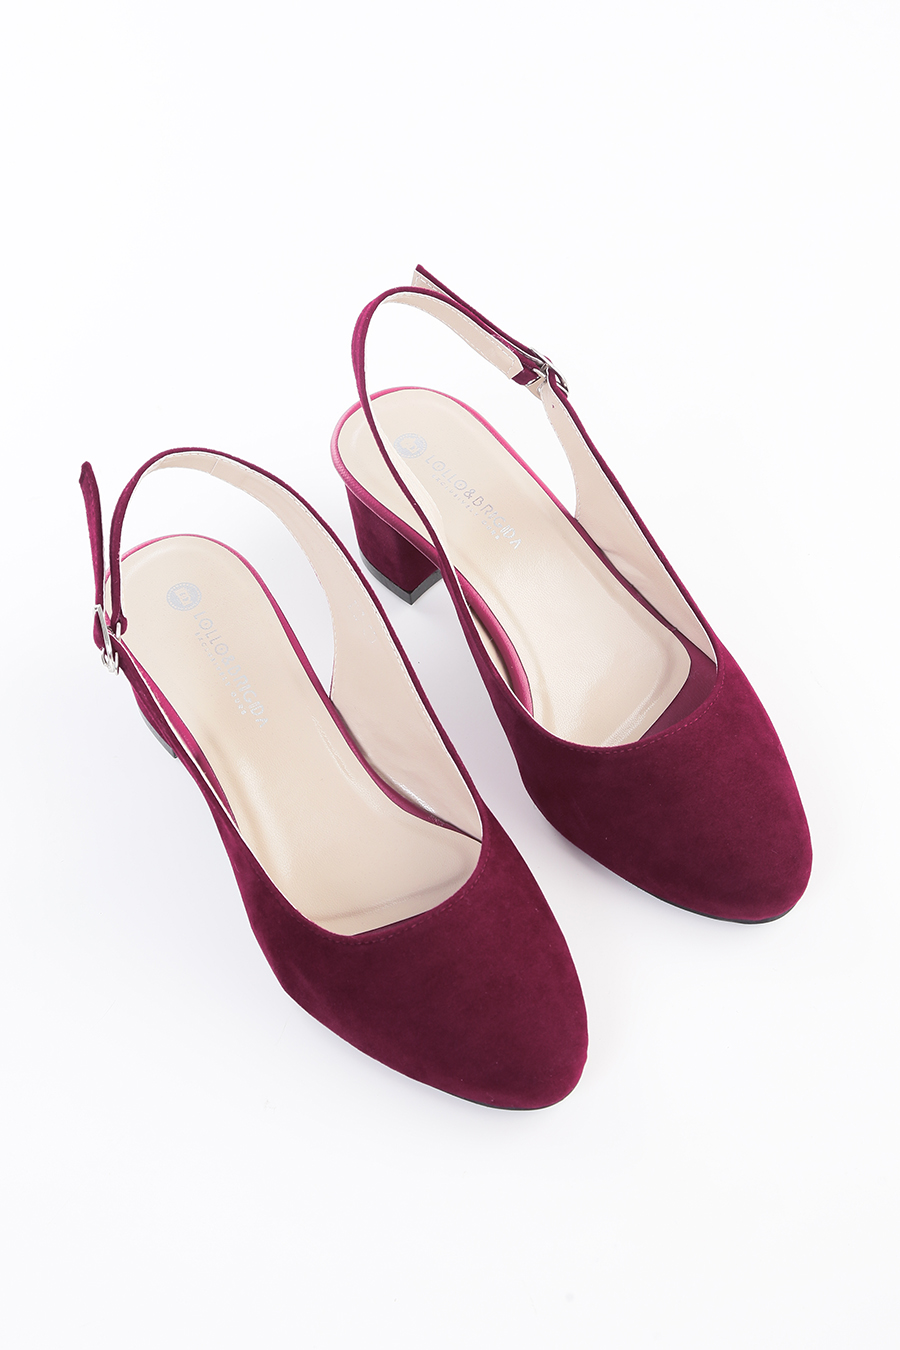 jual-heels-suede-murah-online